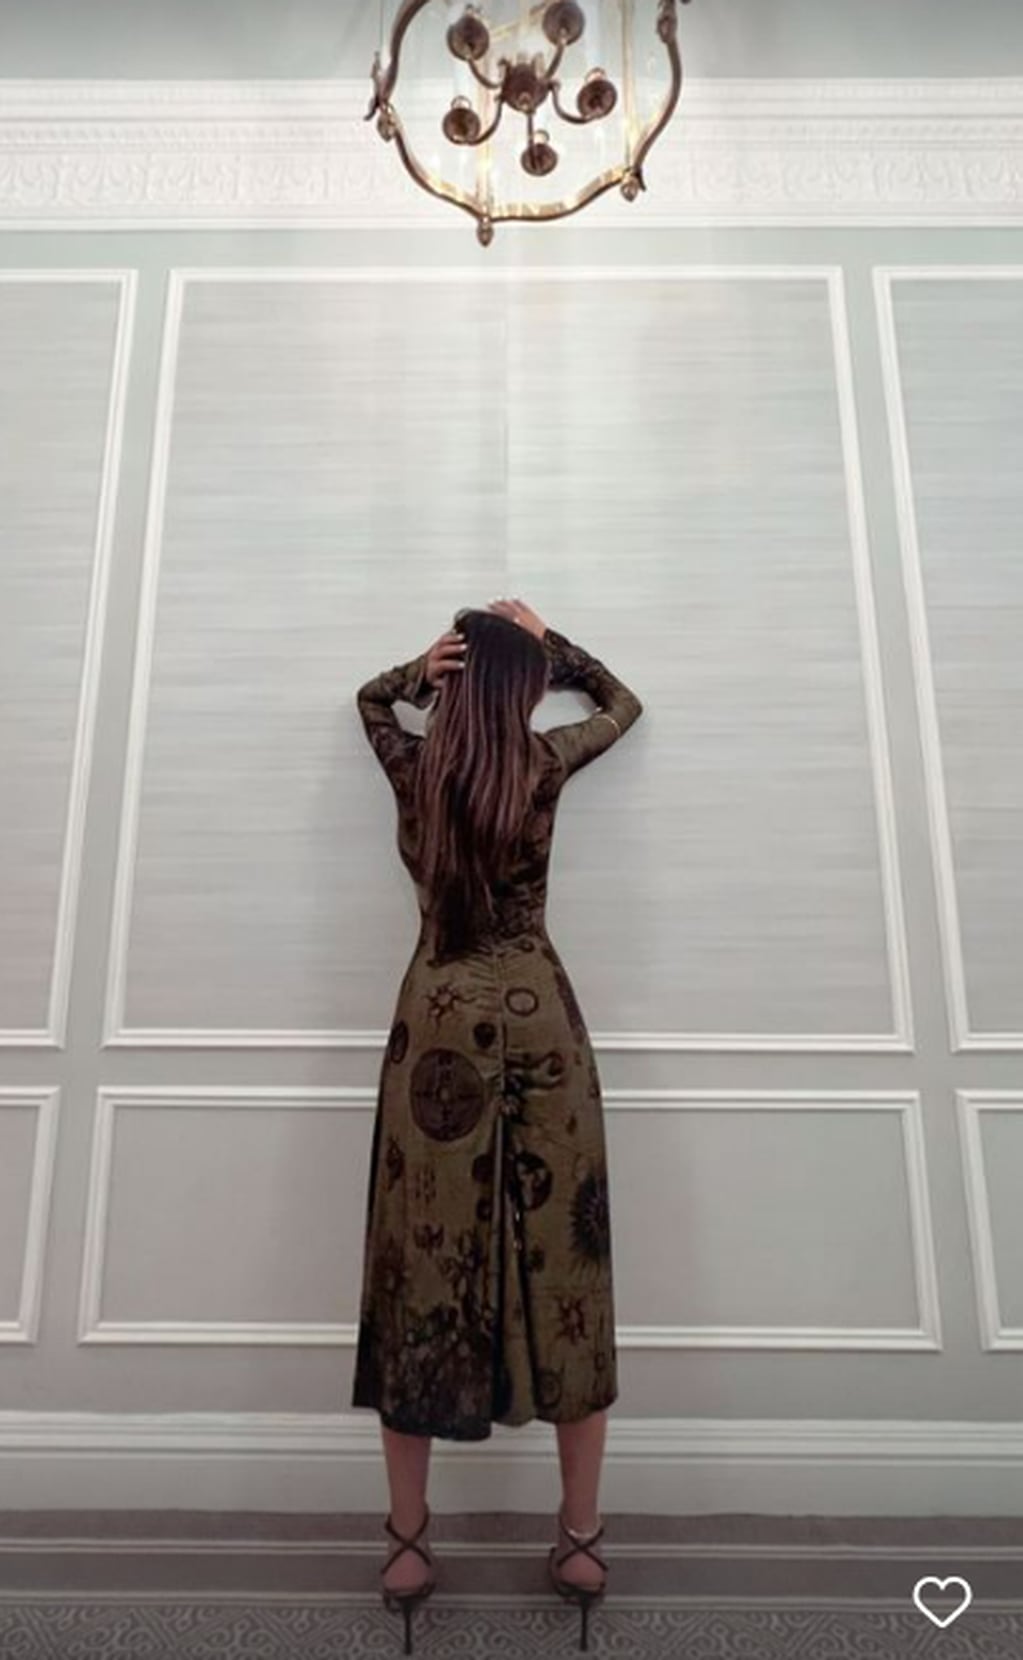 Desde Nueva York, Mia Khalifa miró desafiante a cámara y en vestido gótico robó corazones.